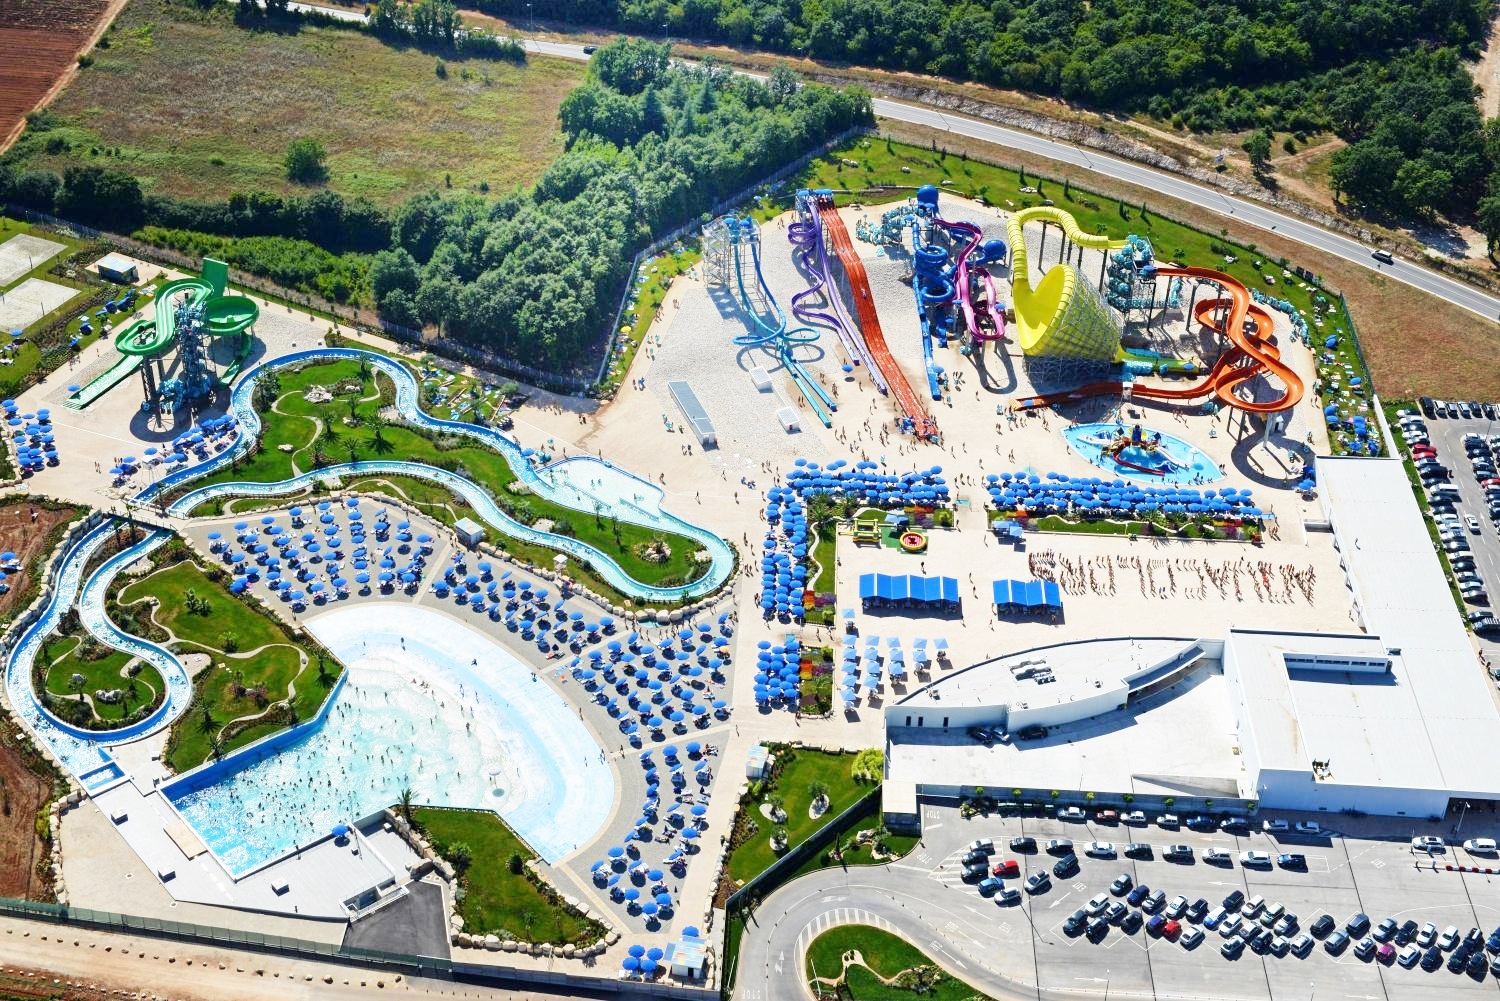 Projekt bazénových technologií pro aquapark Aquacolors Poreč v Chorvatsku realizoval CENTROPROJEKT